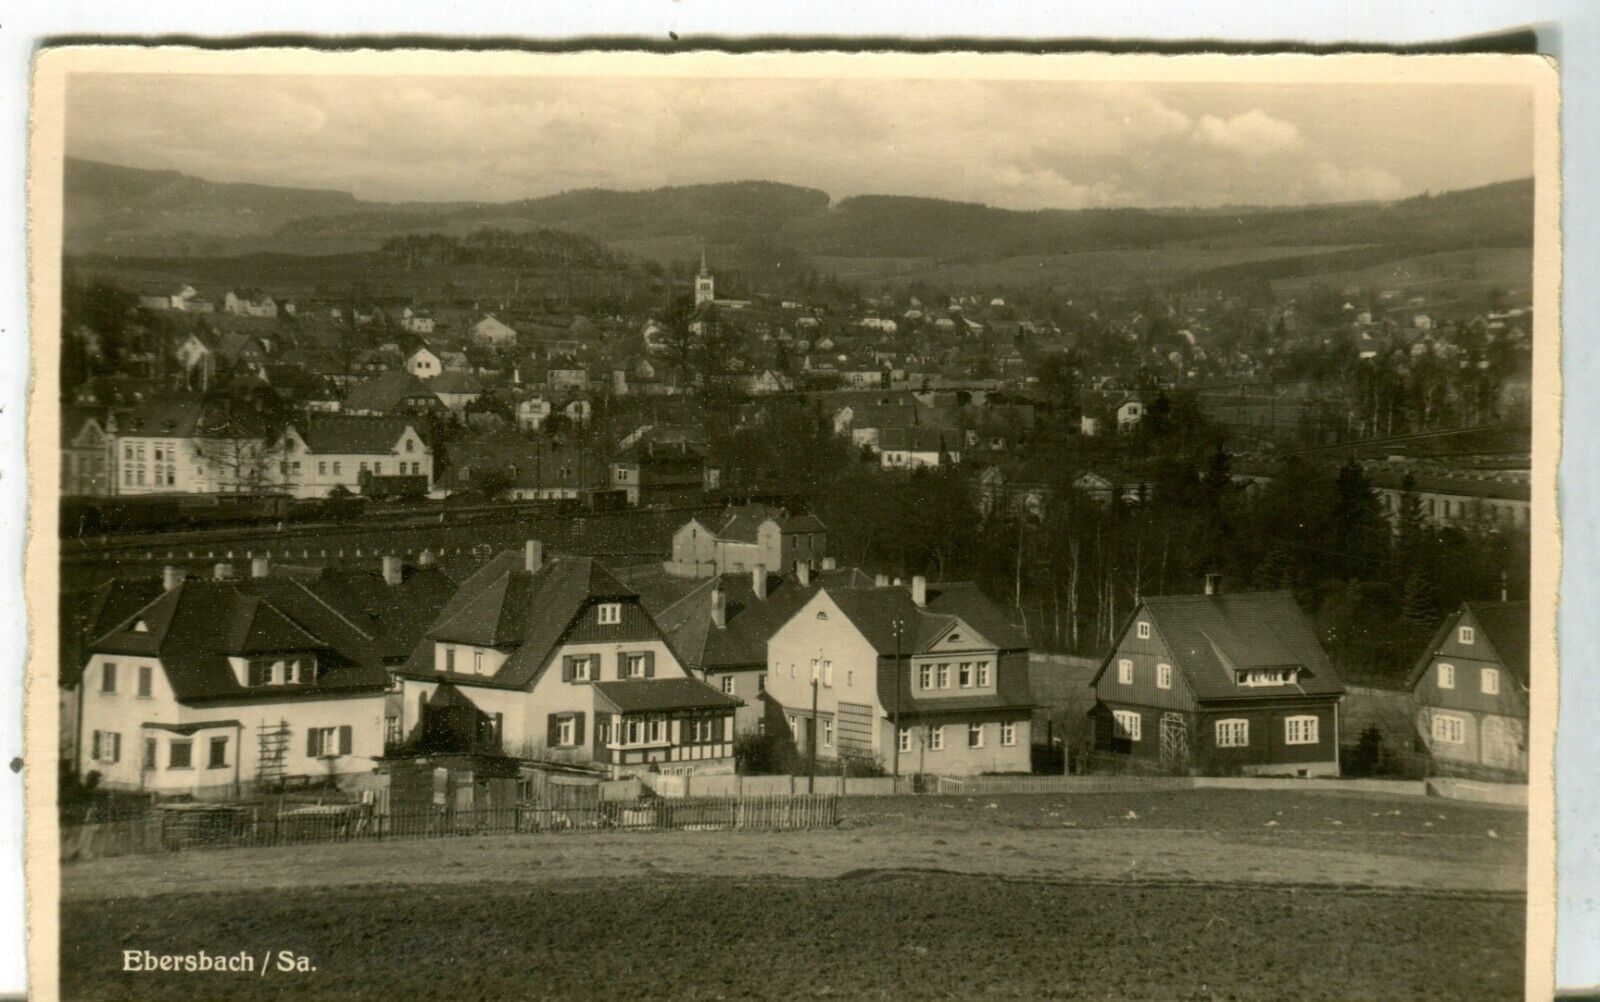 Germany AK Ebersbach Sa. 02727, 02730 - Total View old real photo sepia postcard